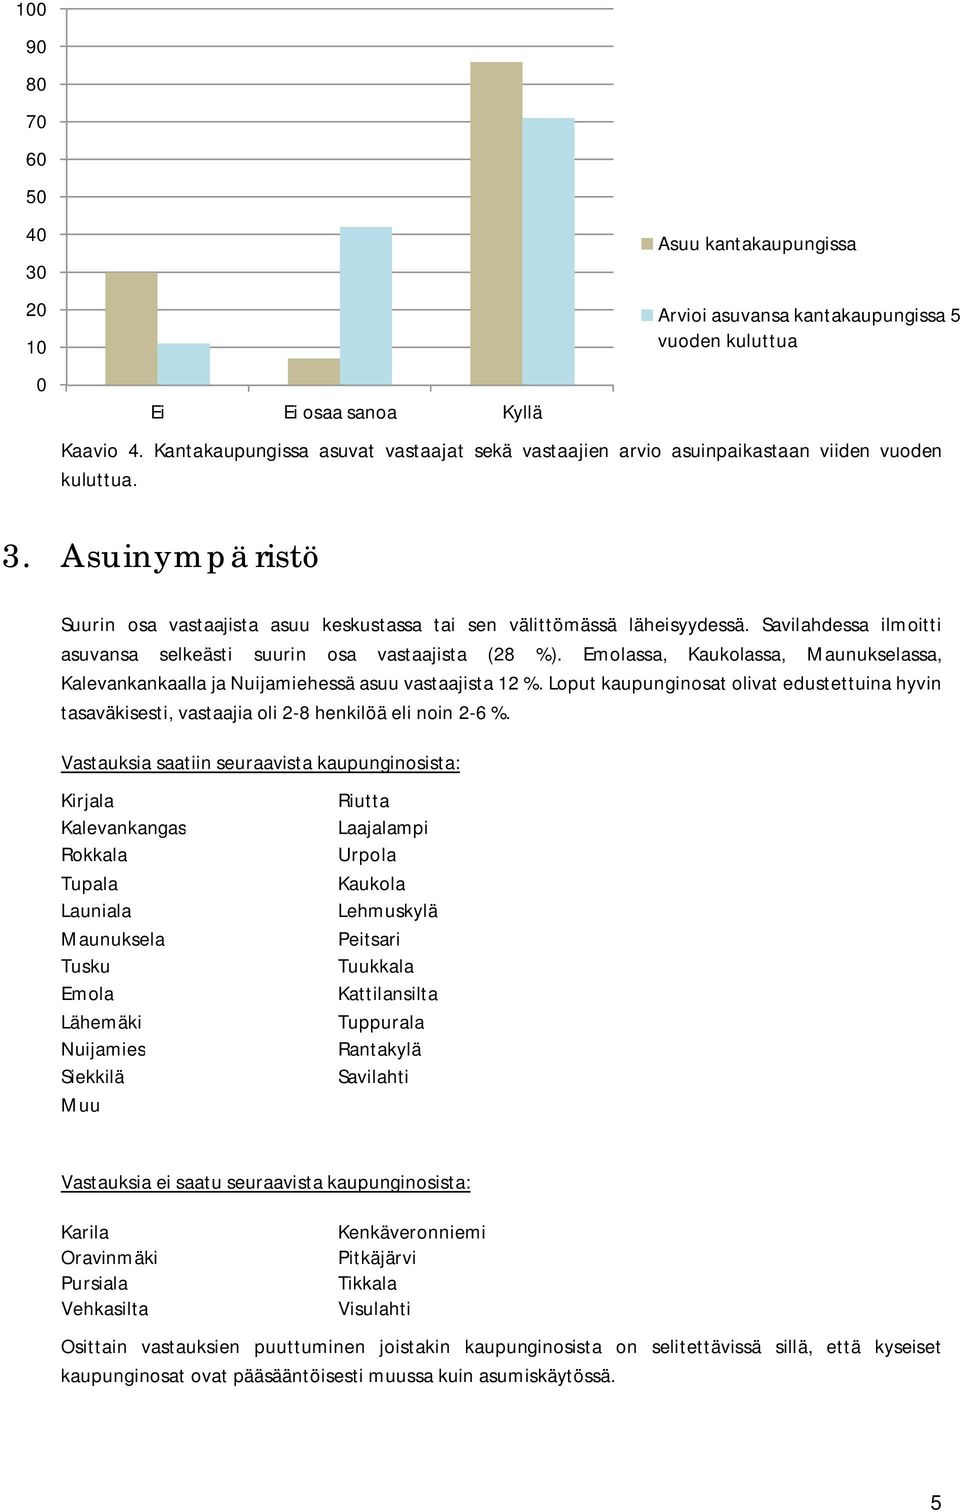 Savilahdessa ilmoitti asuvansa selkeästi suurin osa vastaajista (28 %). Emolassa, Kaukolassa, Maunukselassa, Kalevankankaalla ja Nuijamiehessä asuu vastaajista 12 %.